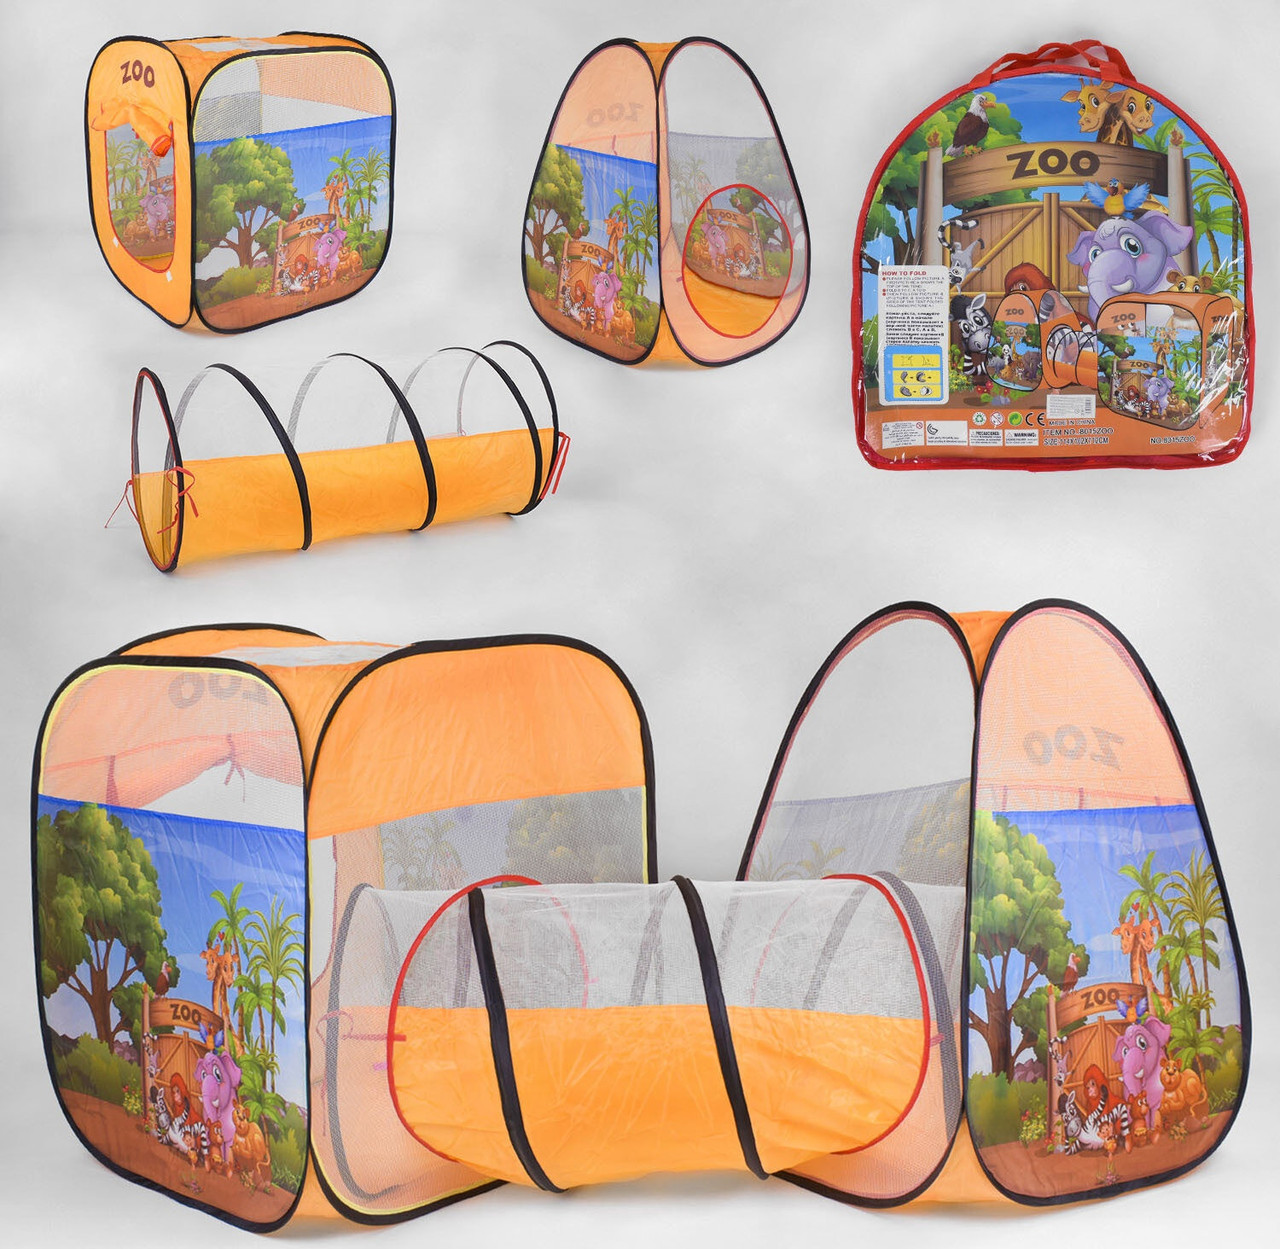 

Детская игровая двойная палатка с тоннелем для двух детей 8015(2-1) ZOO,Зоопарк, размер 224*65*83 см,Оранжевая